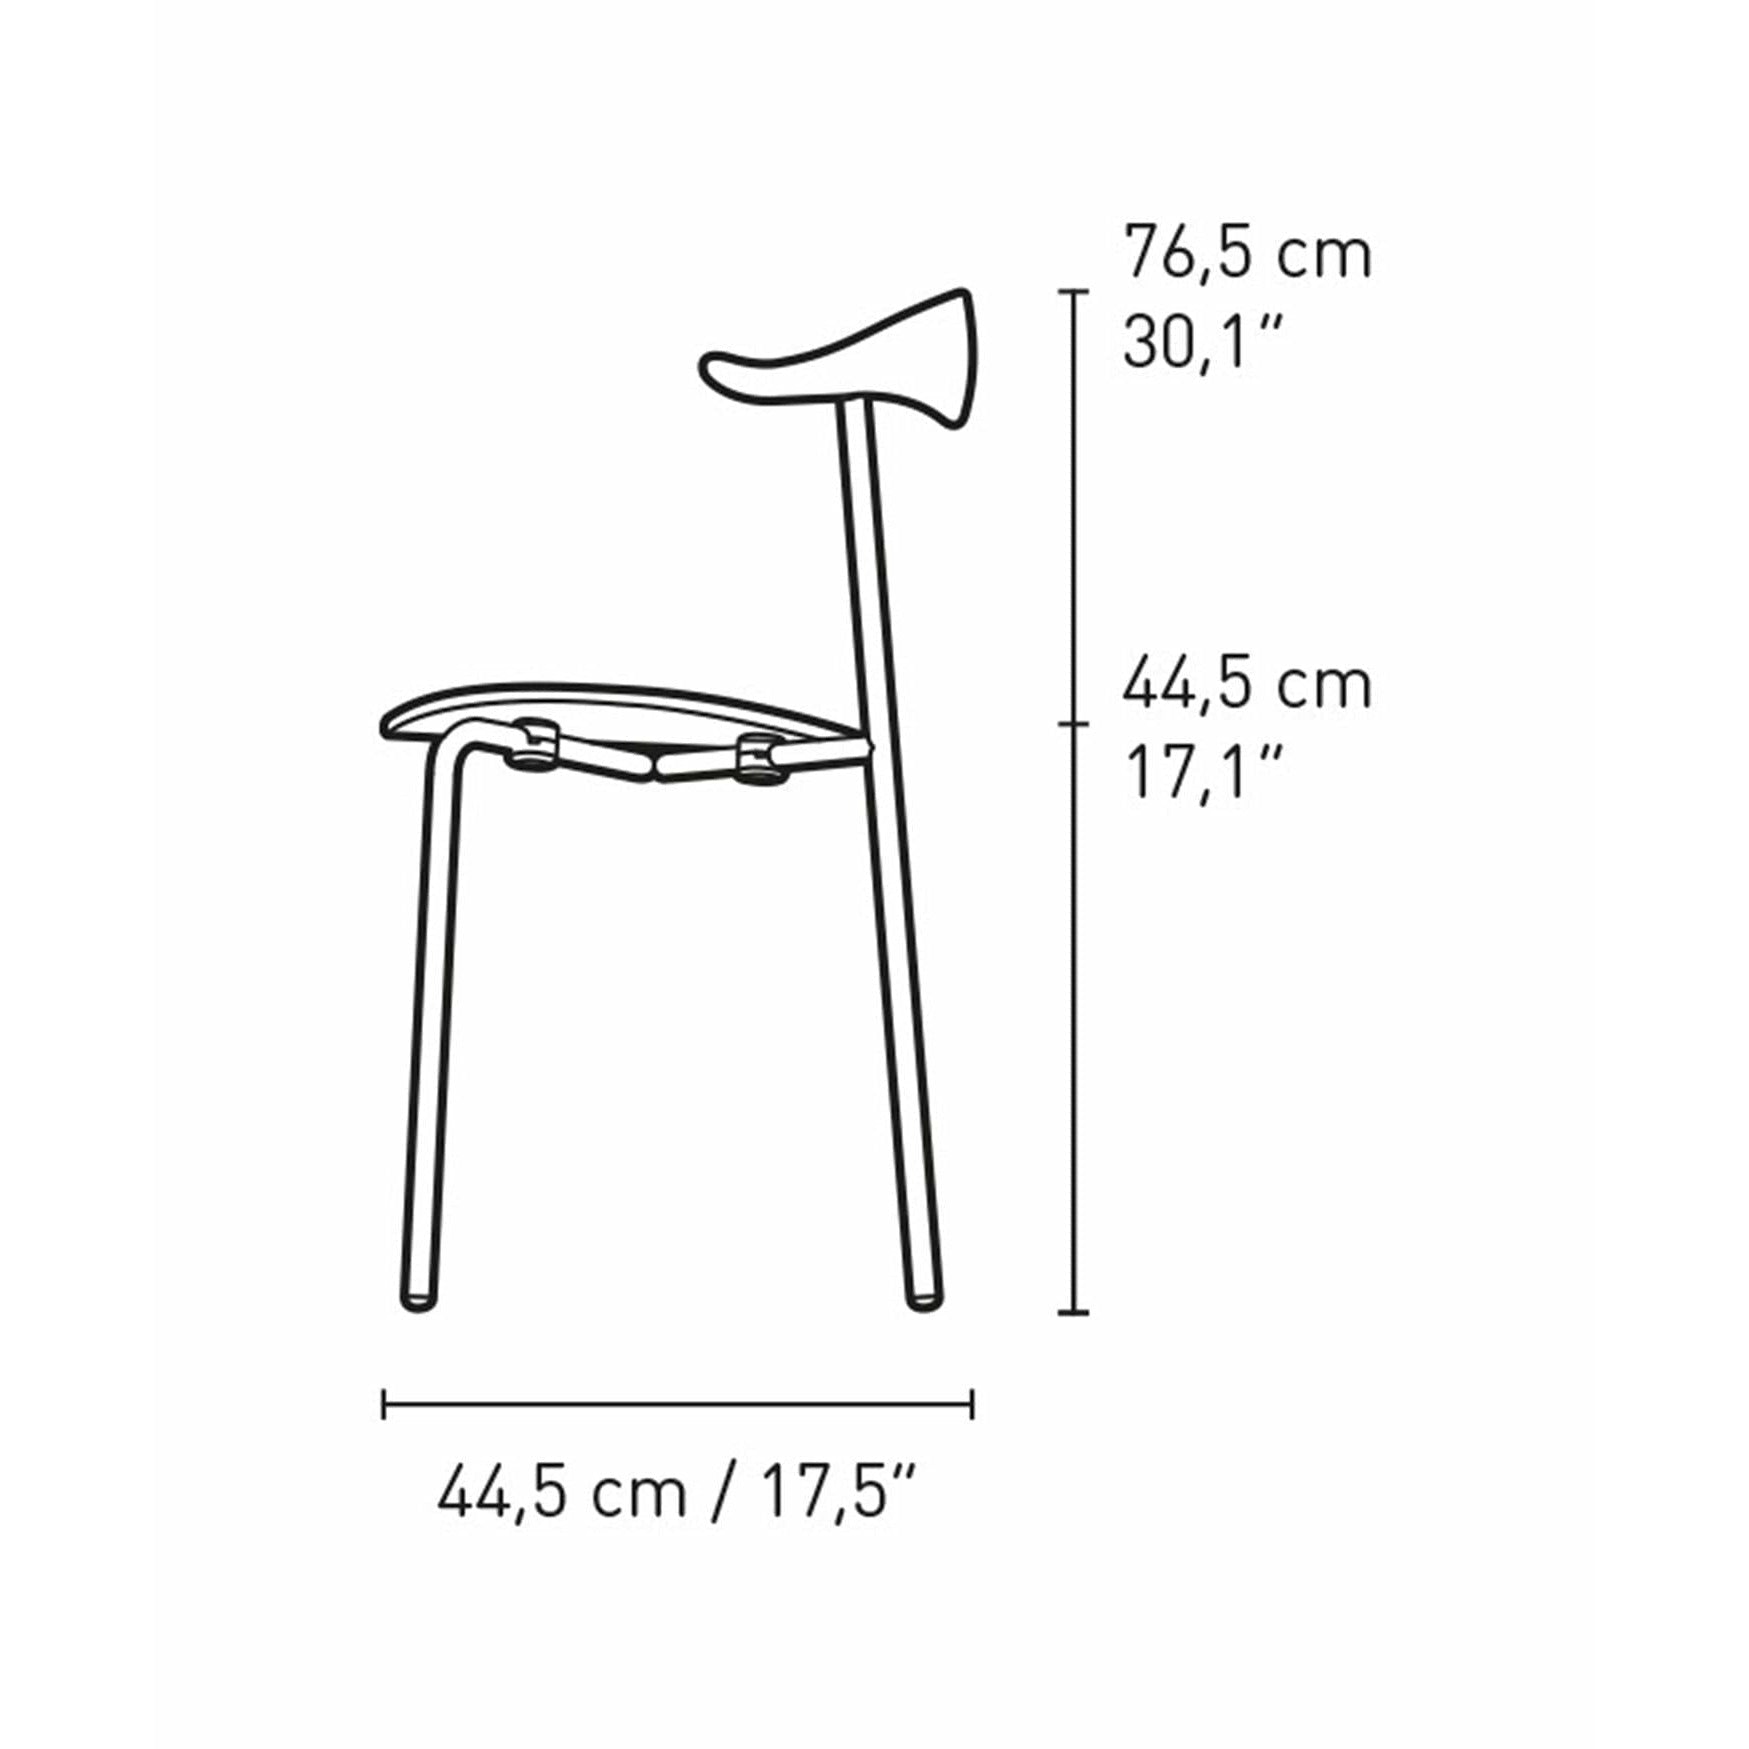 Carl Hansen CH88T -stol, ekrökt olja/rostfritt stål